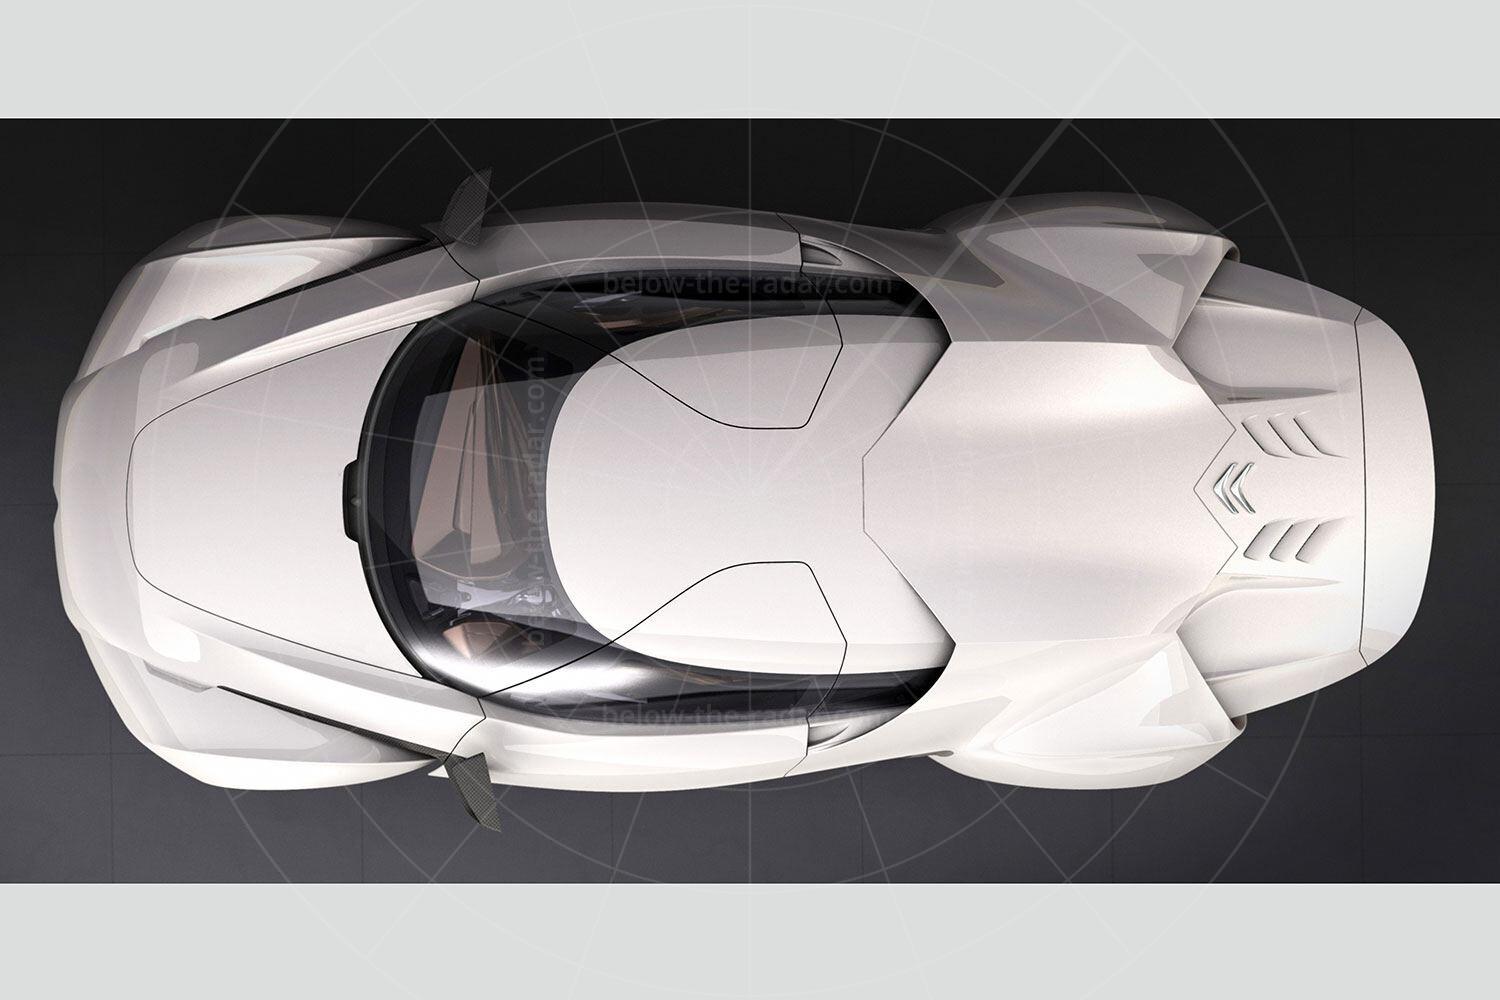 Citroen GT concept Pic: Citroen | Citroen GT concept